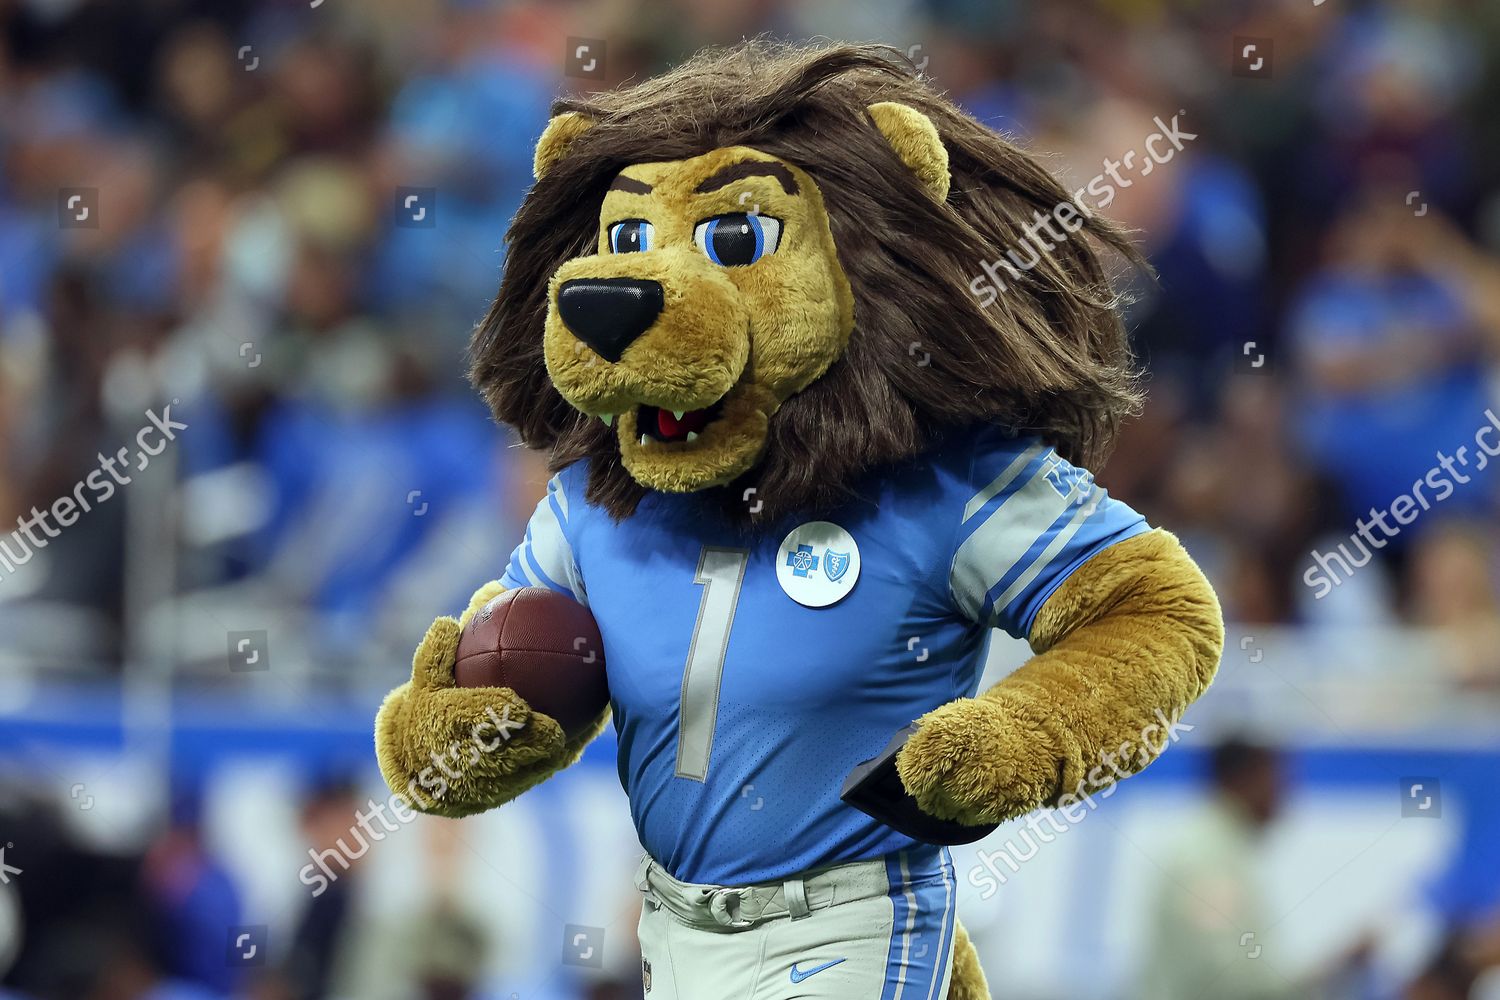 detroit lions mascot